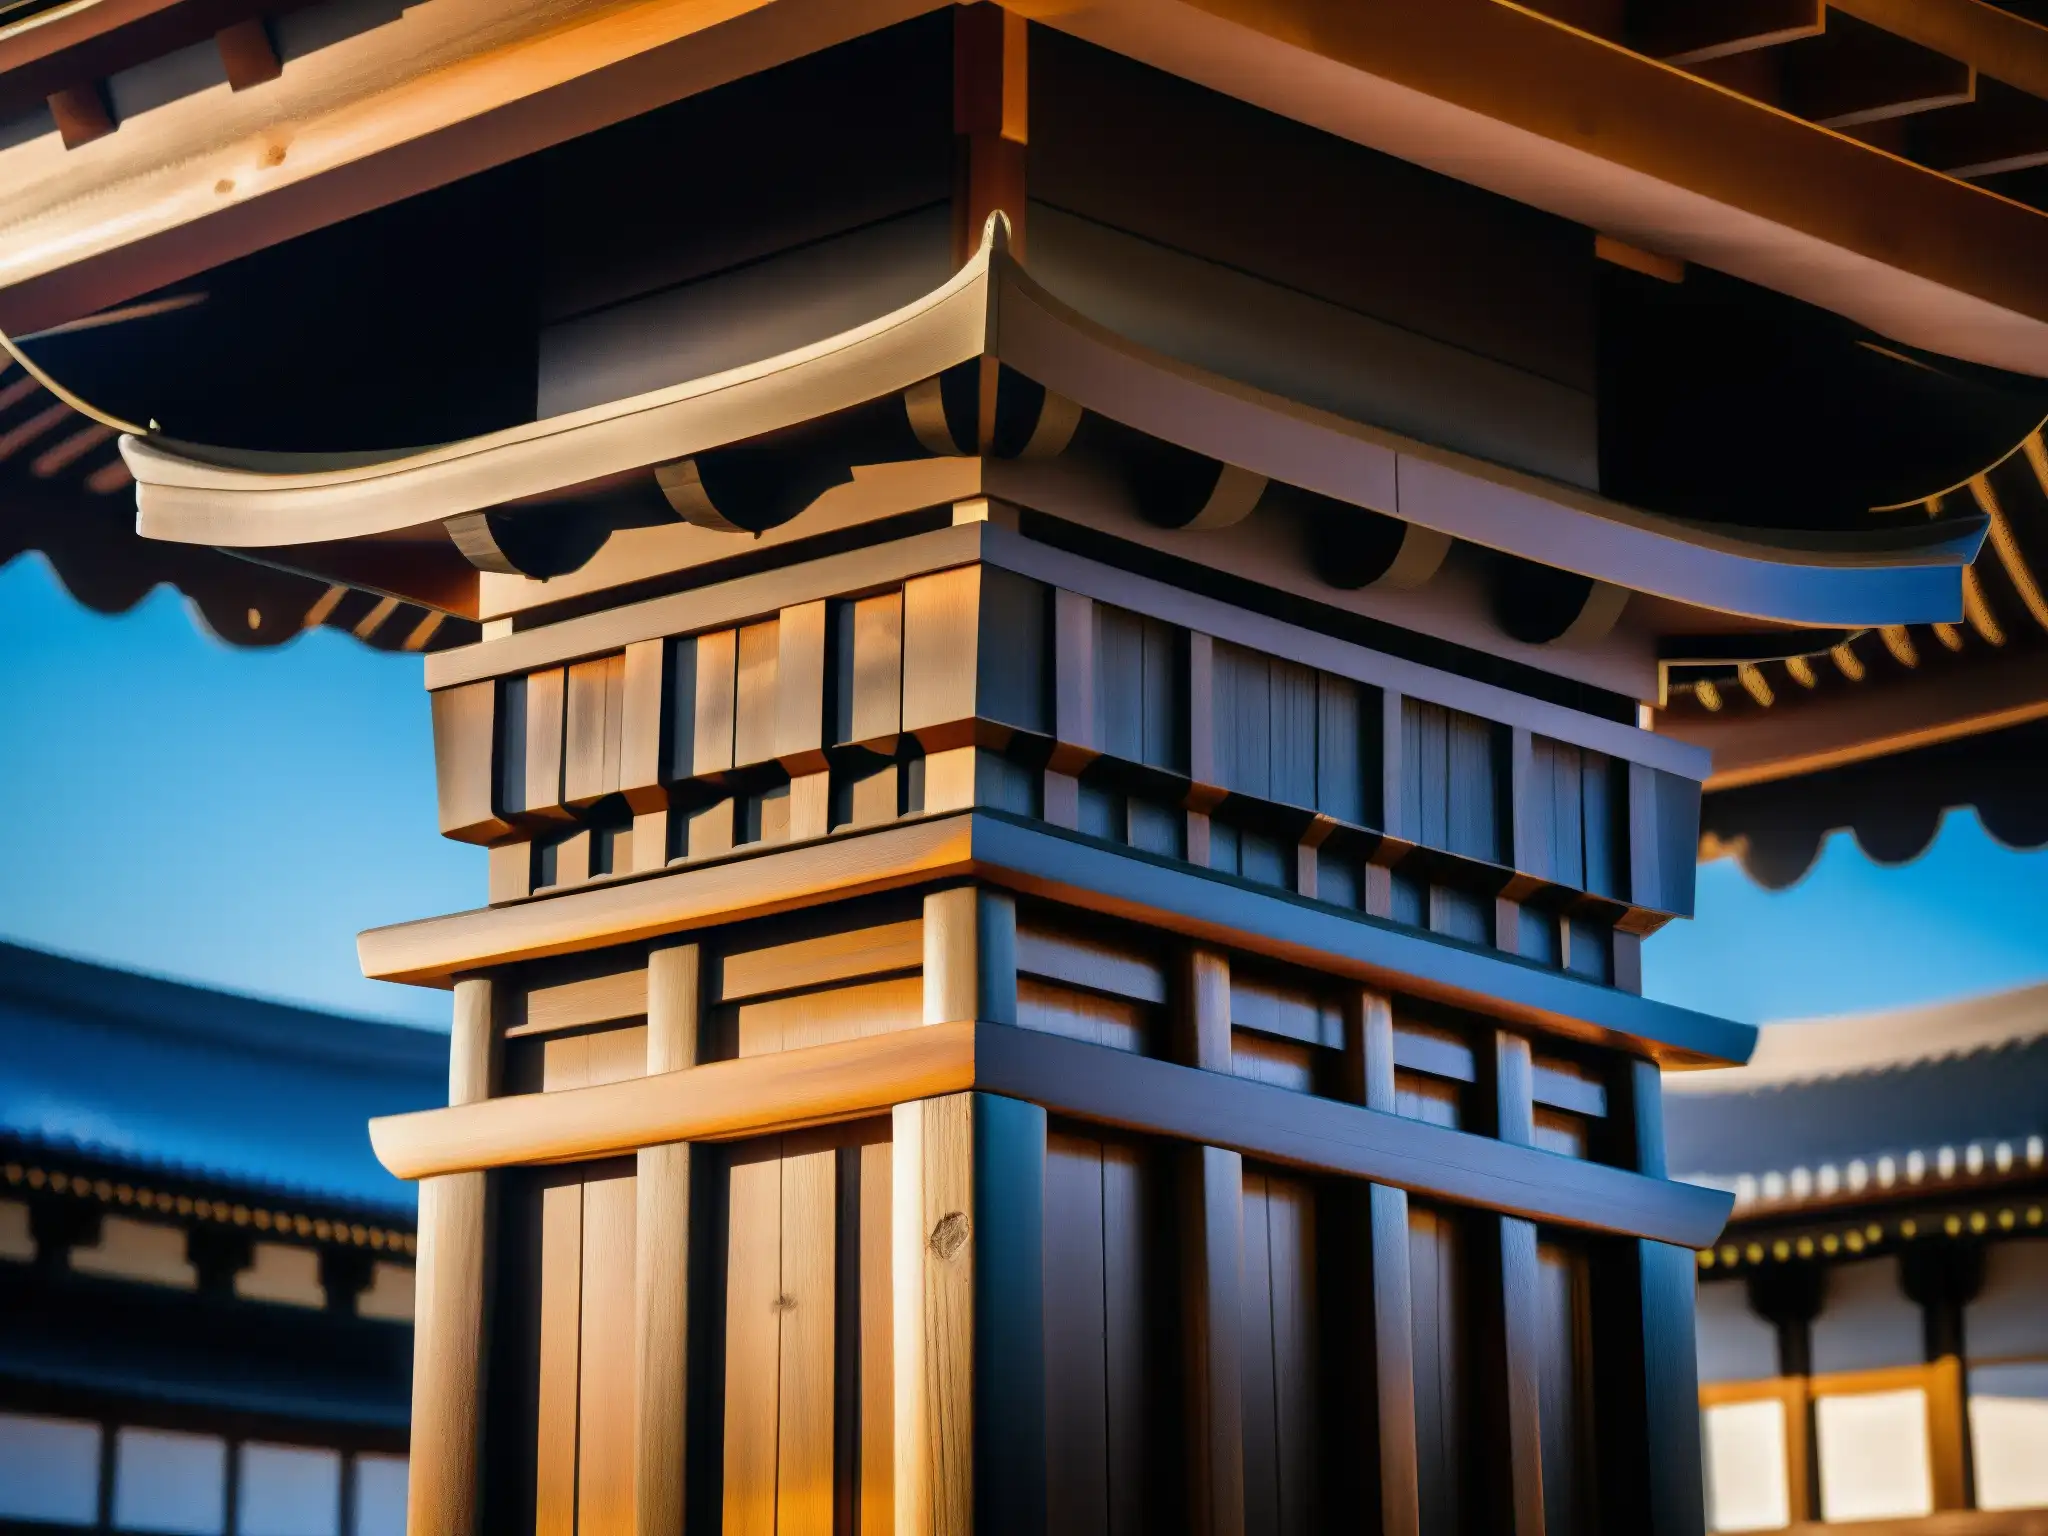 Hábiles artesanos japoneses construyen con misterio hitobashira, reflejando la antigua y enigmática arquitectura japonesa